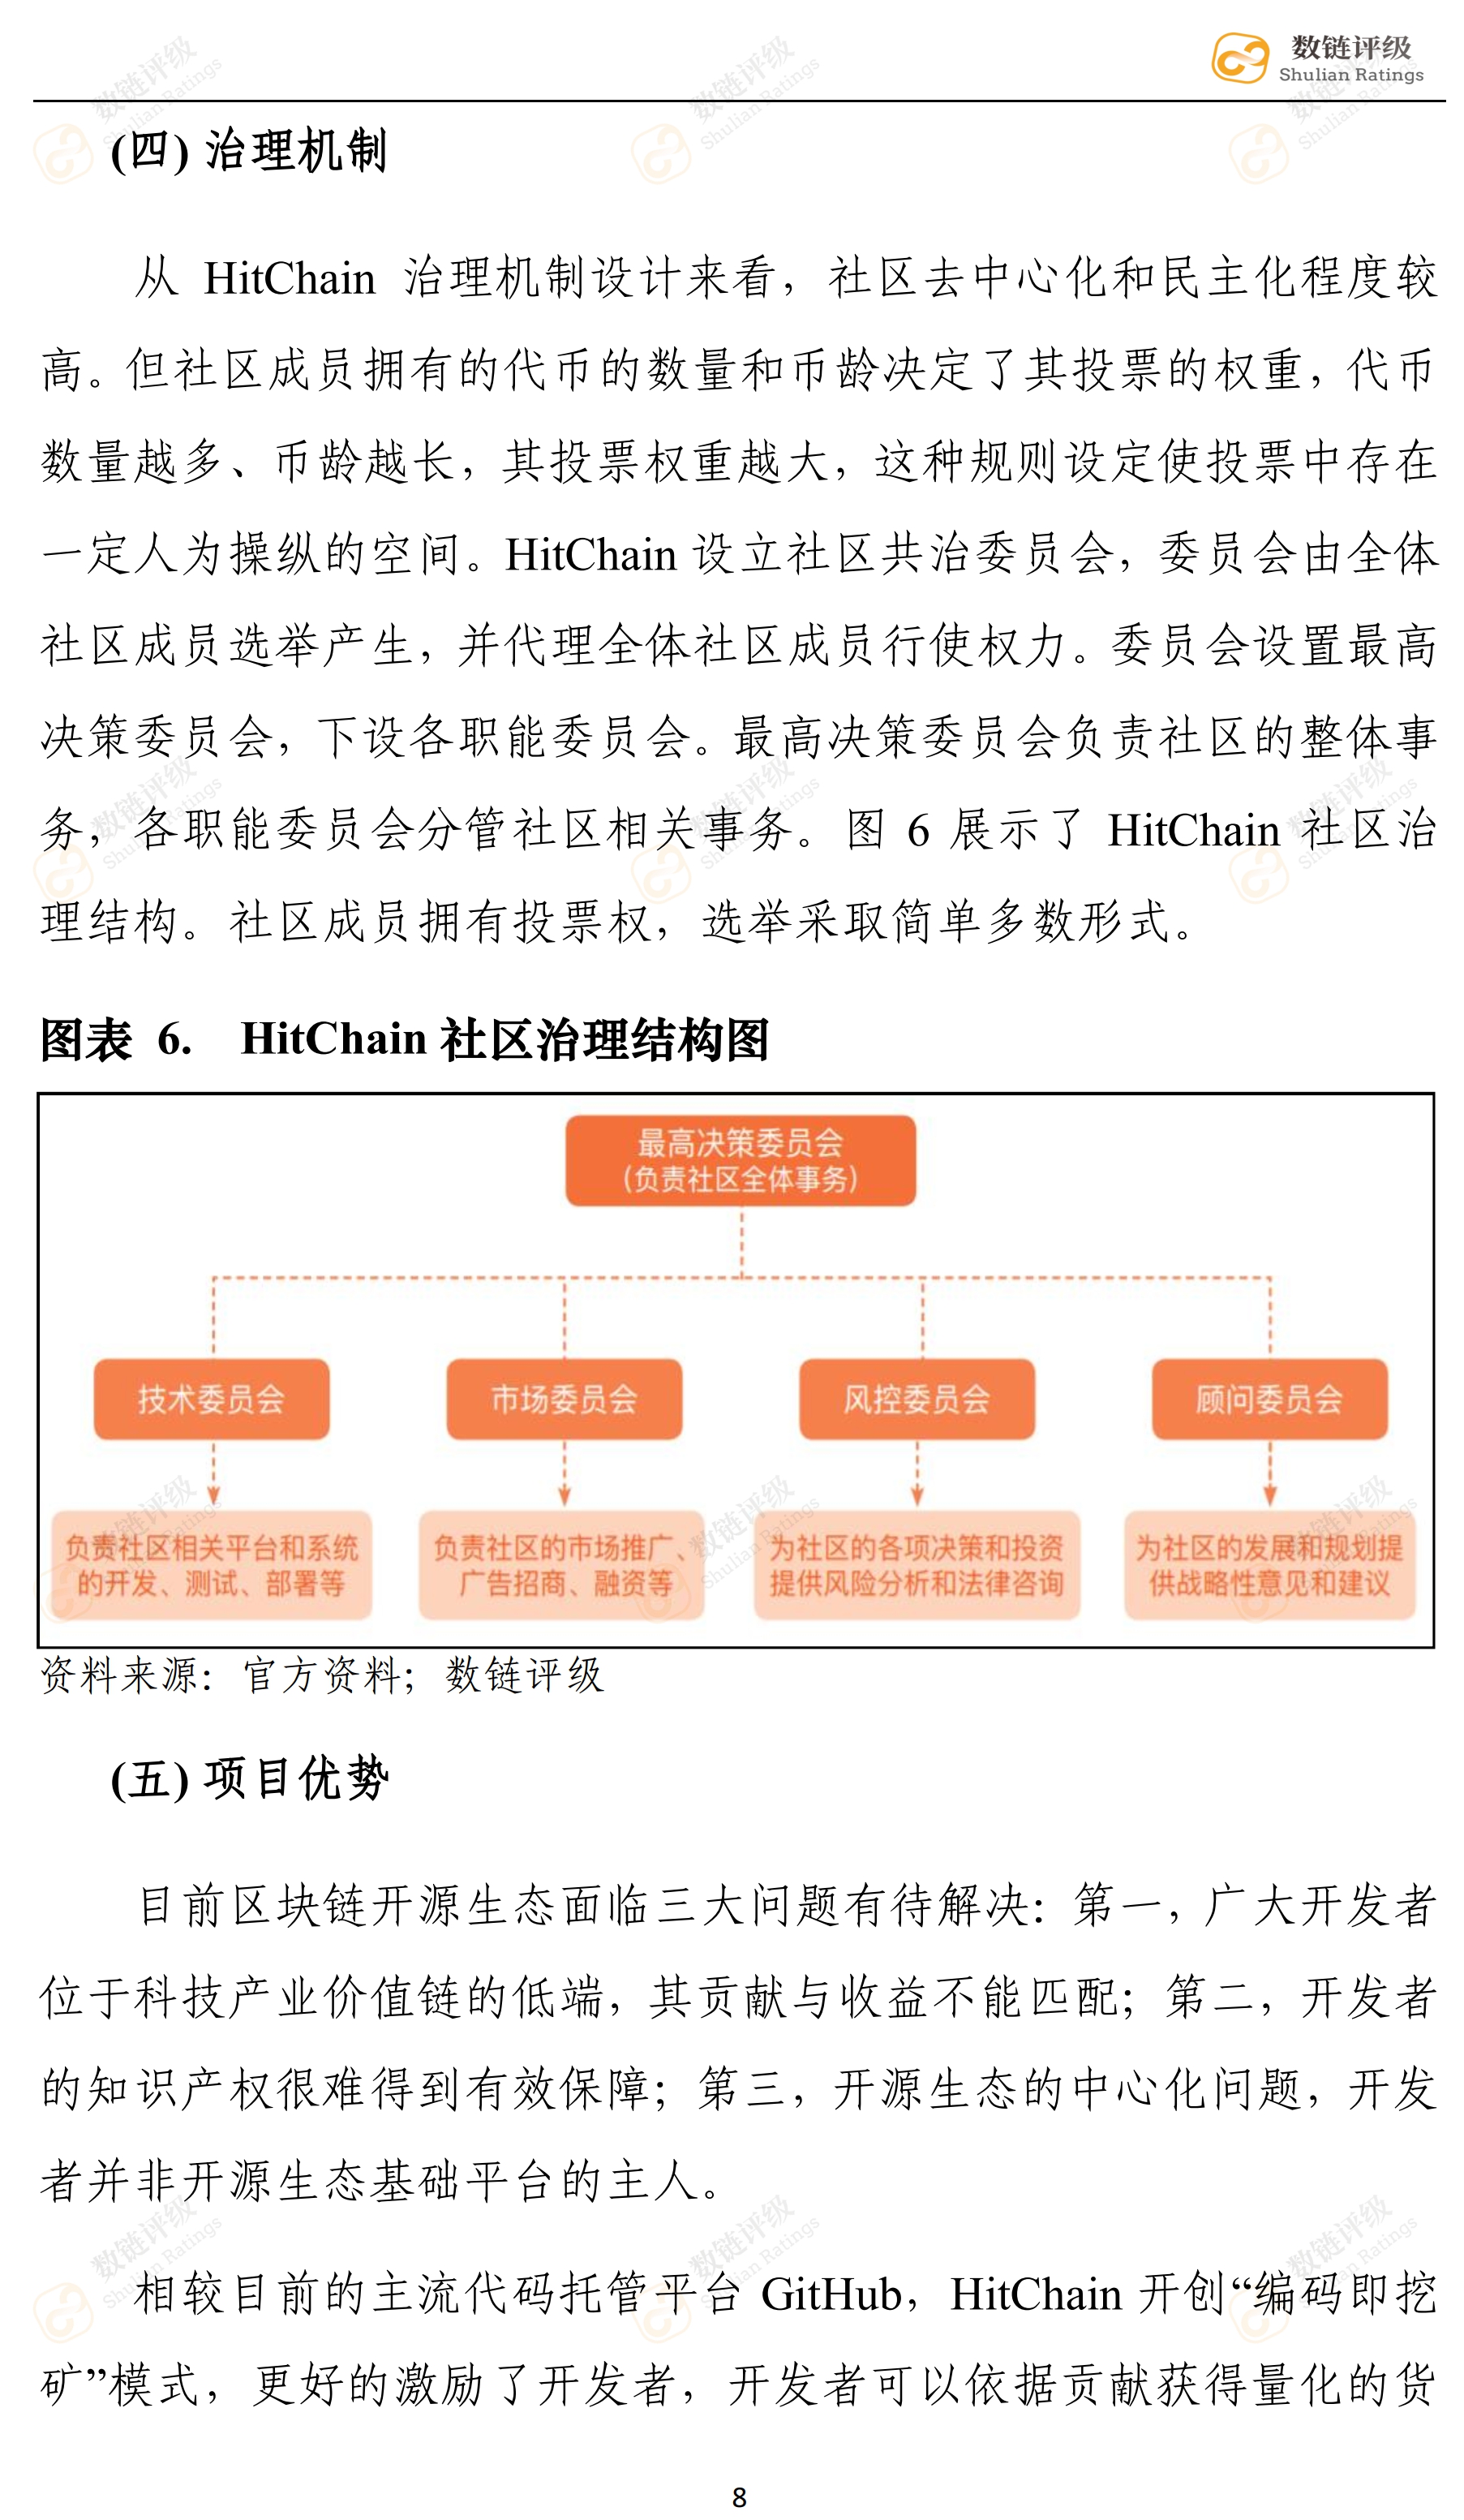 数链评级 | HitChain——知名资本拥趸，对标GitHub竞争压力较大配图(12)